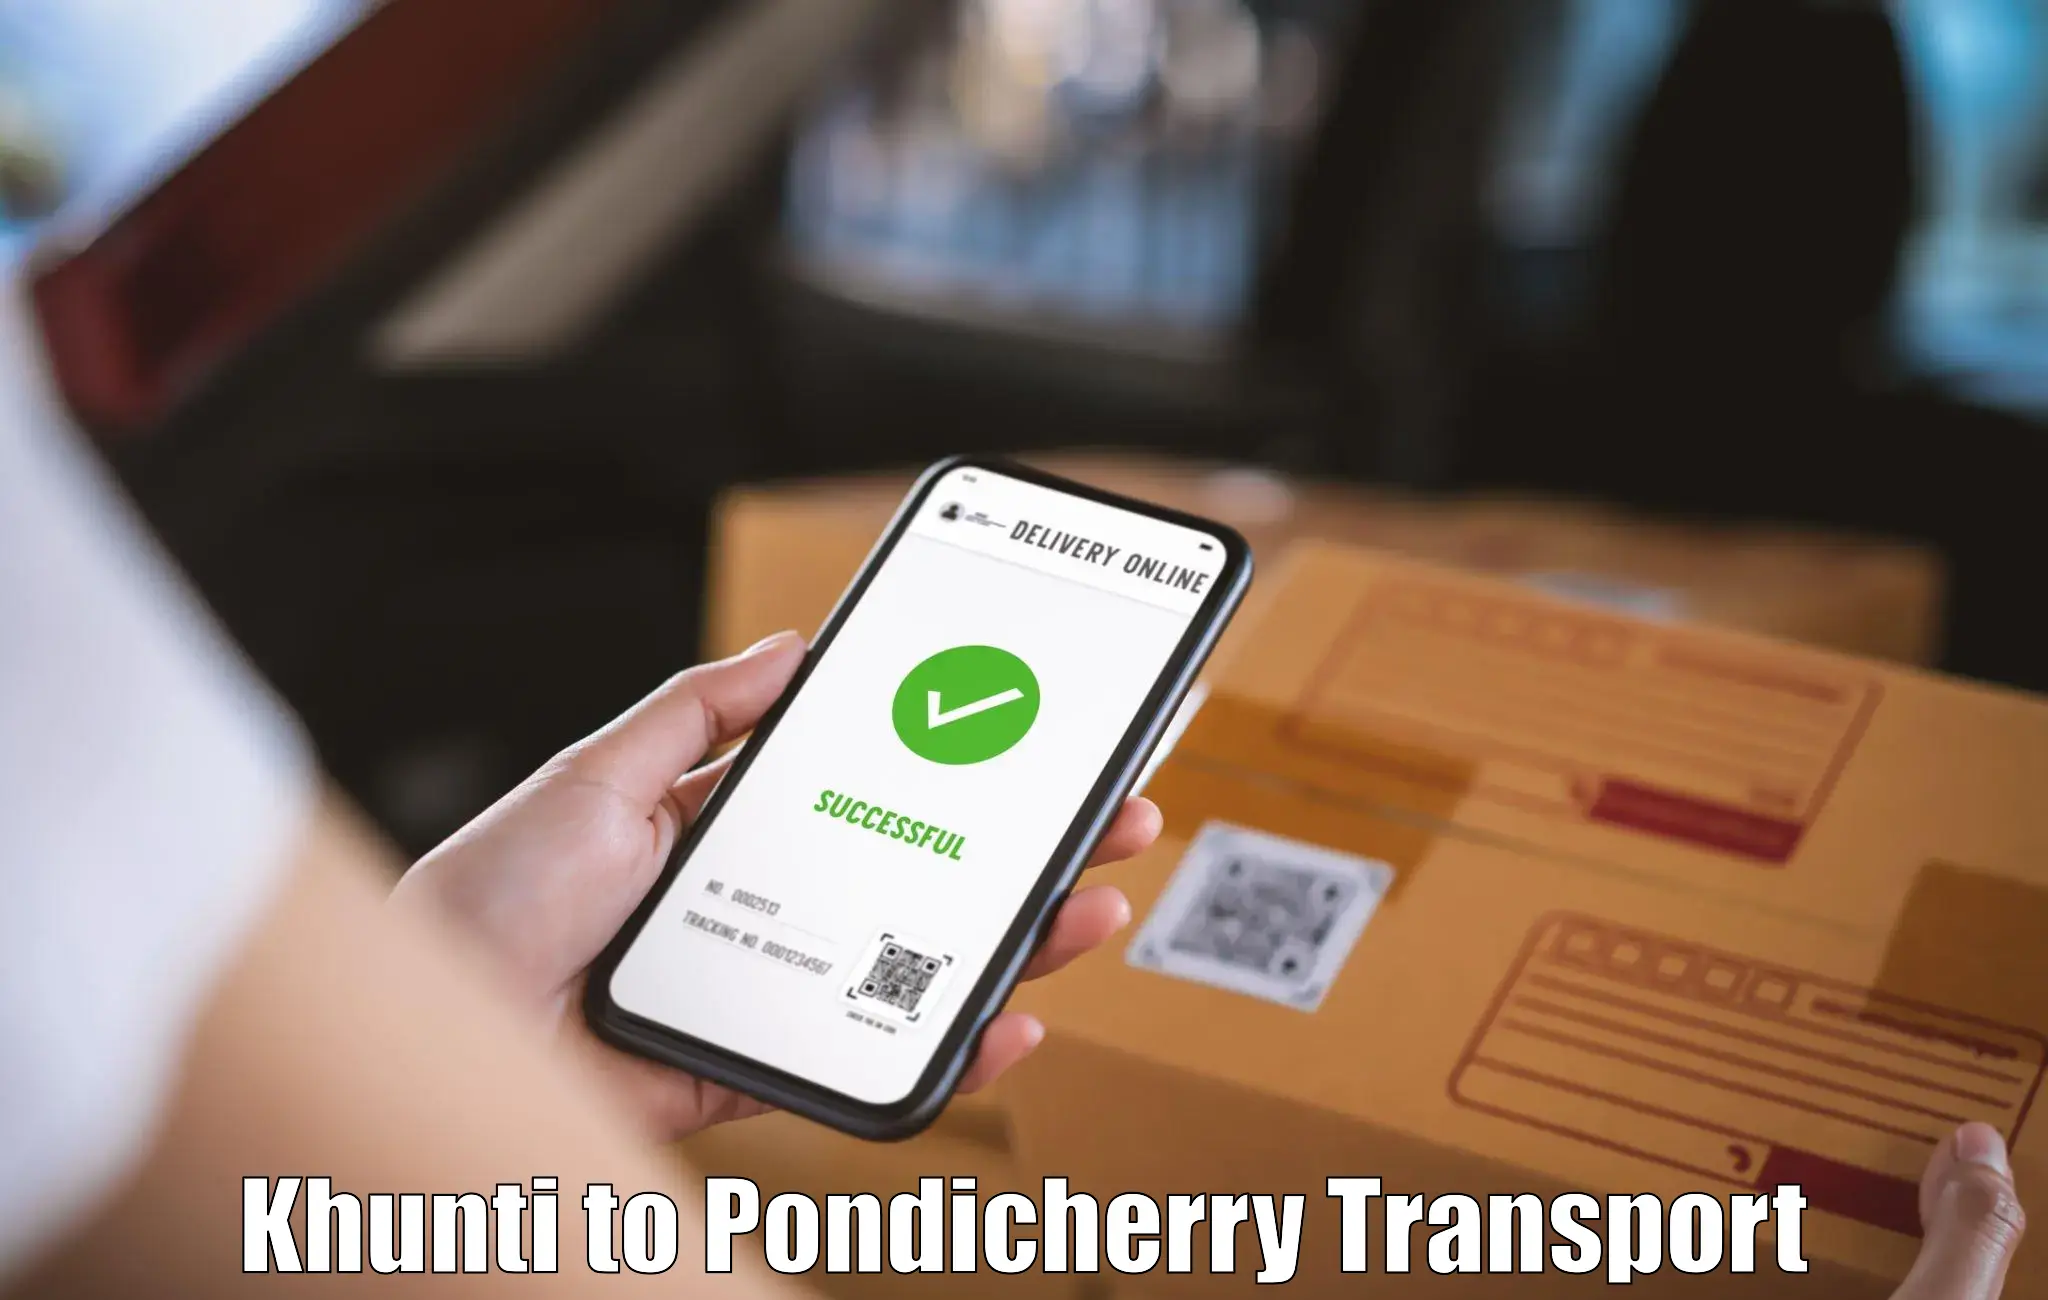 Daily transport service Khunti to Pondicherry University